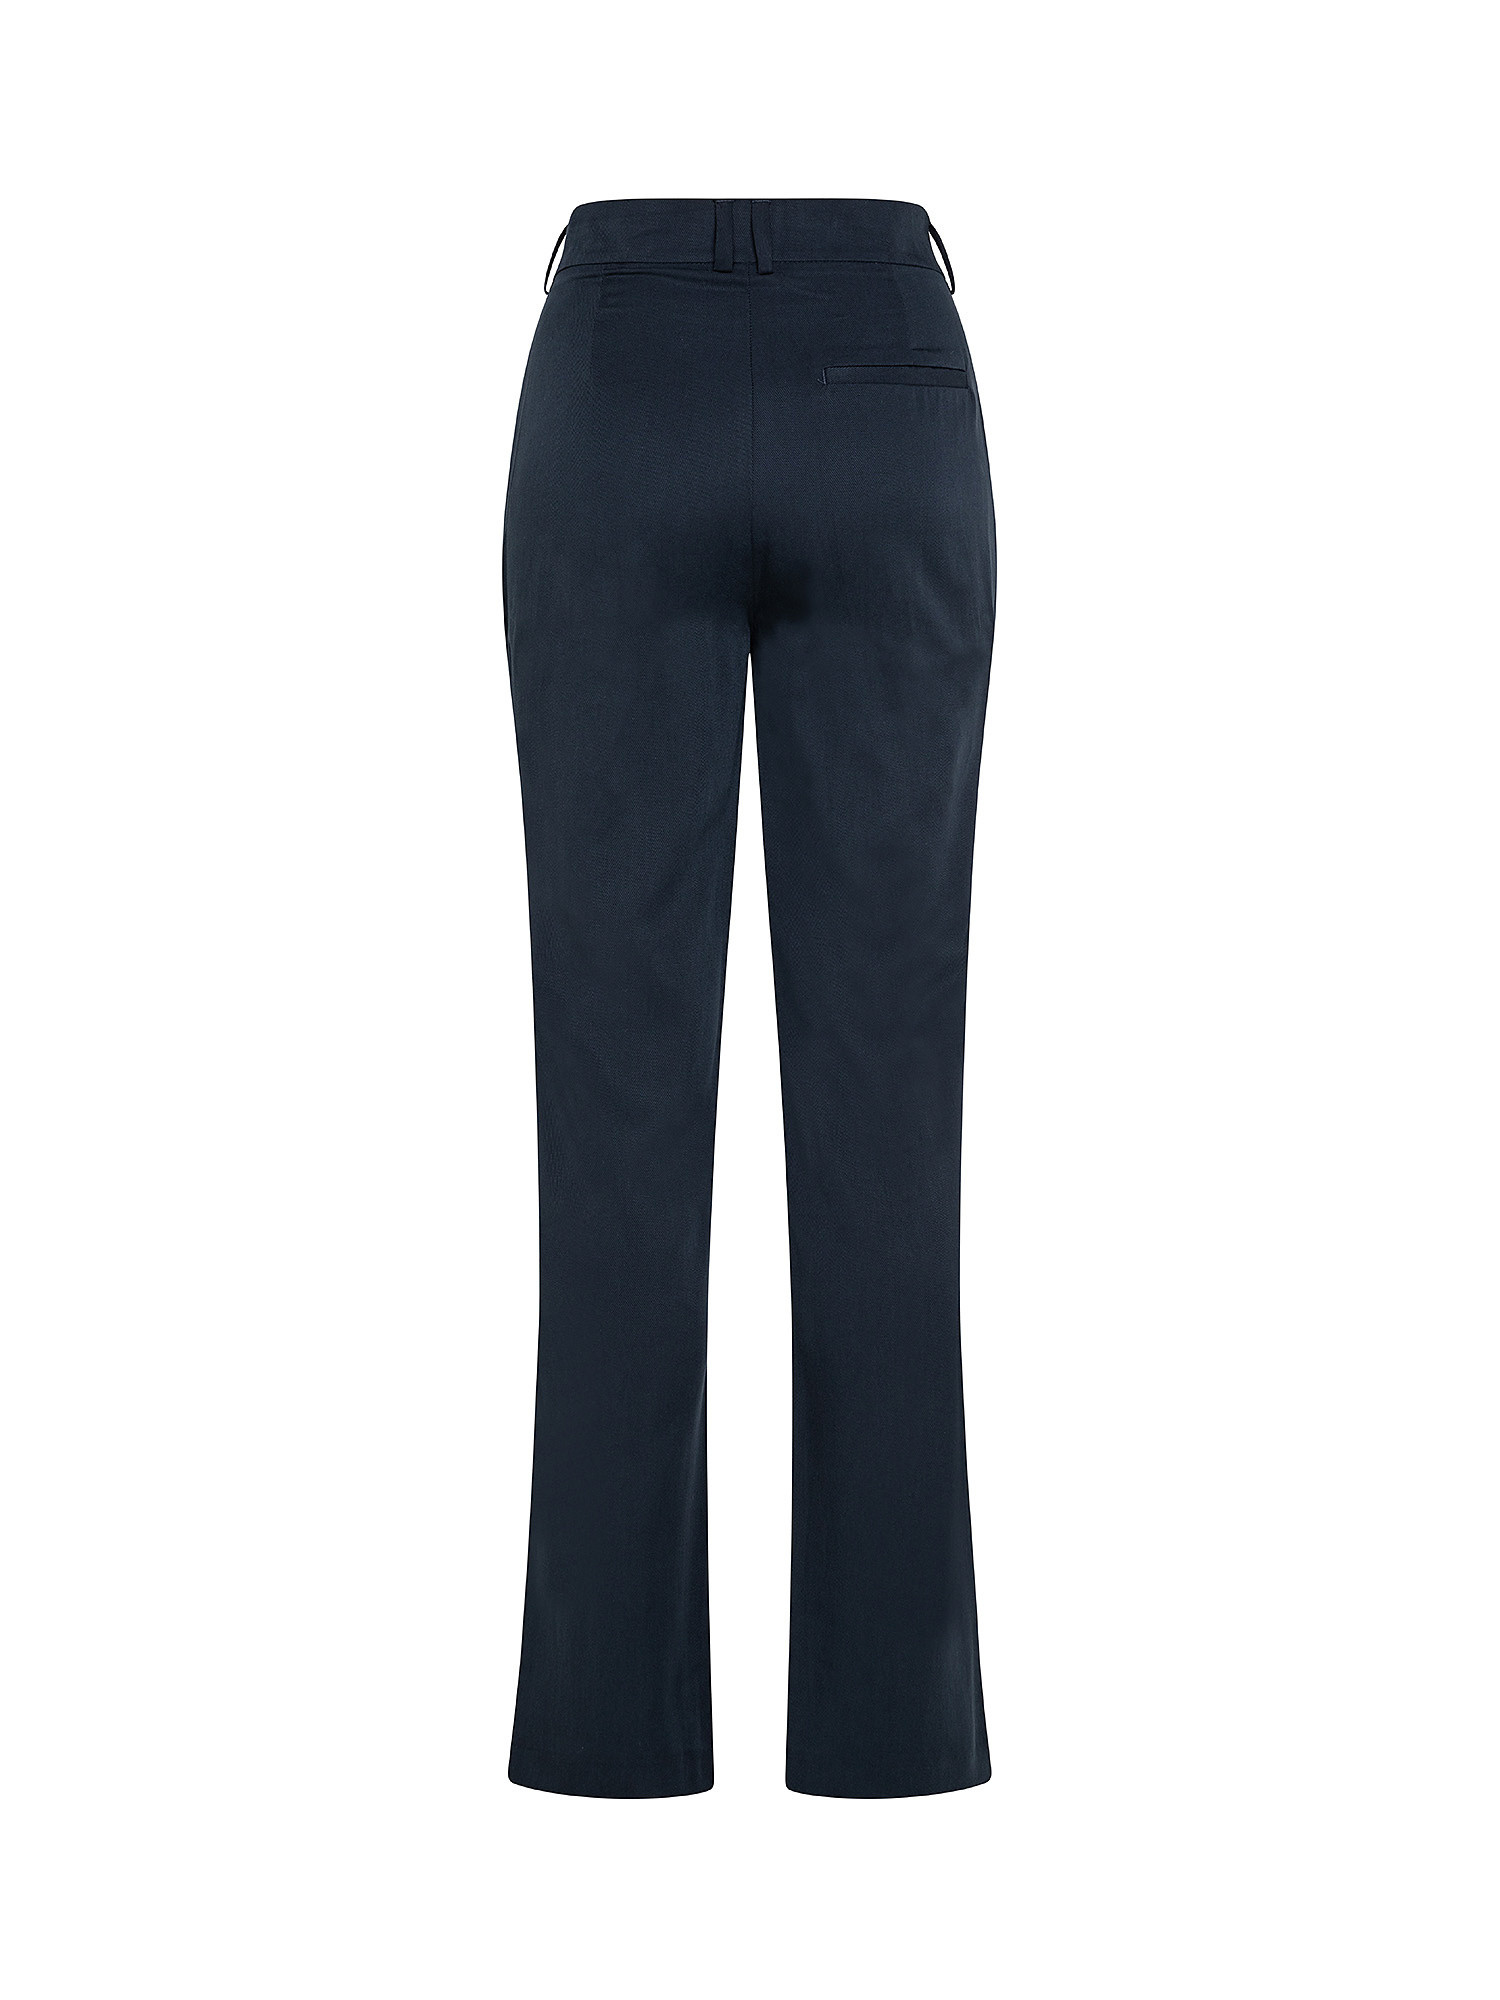 Pantaloni chino Fatima, Blu scuro, large image number 1